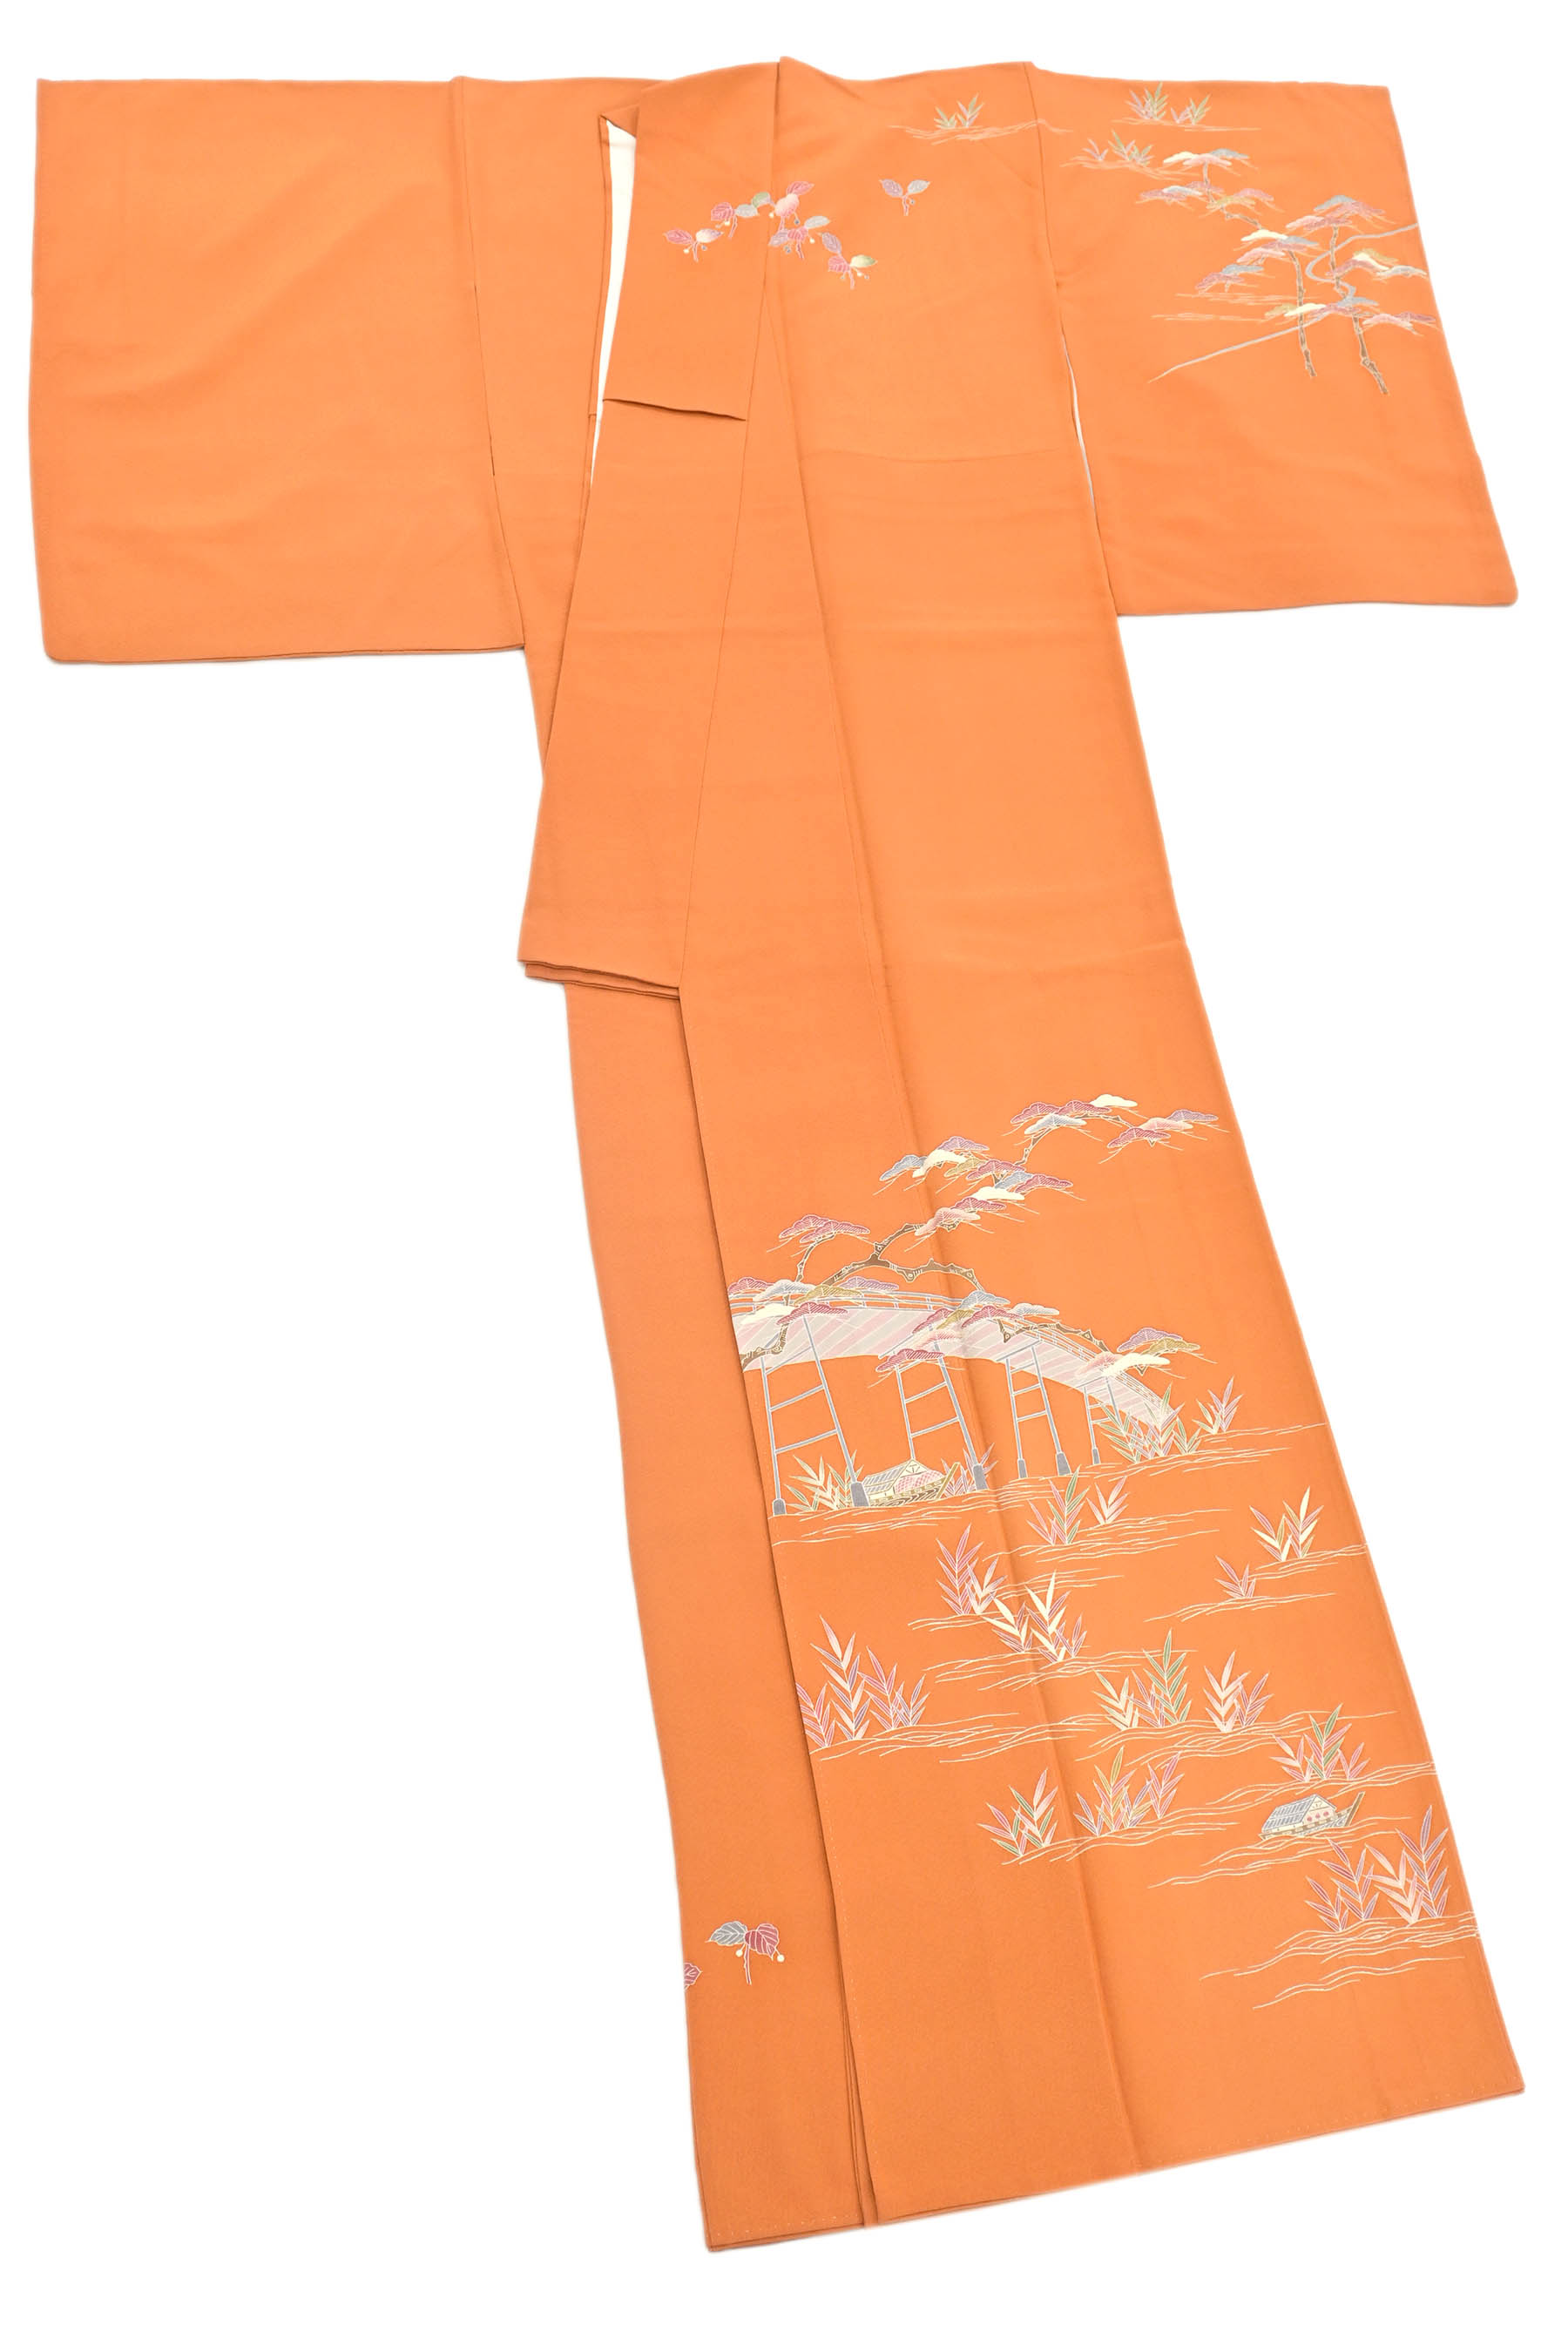 訪問着【清染居】上野街子 京友禅 正絹 茶屋辻 袷着物 縫い一つ紋 赤茶色